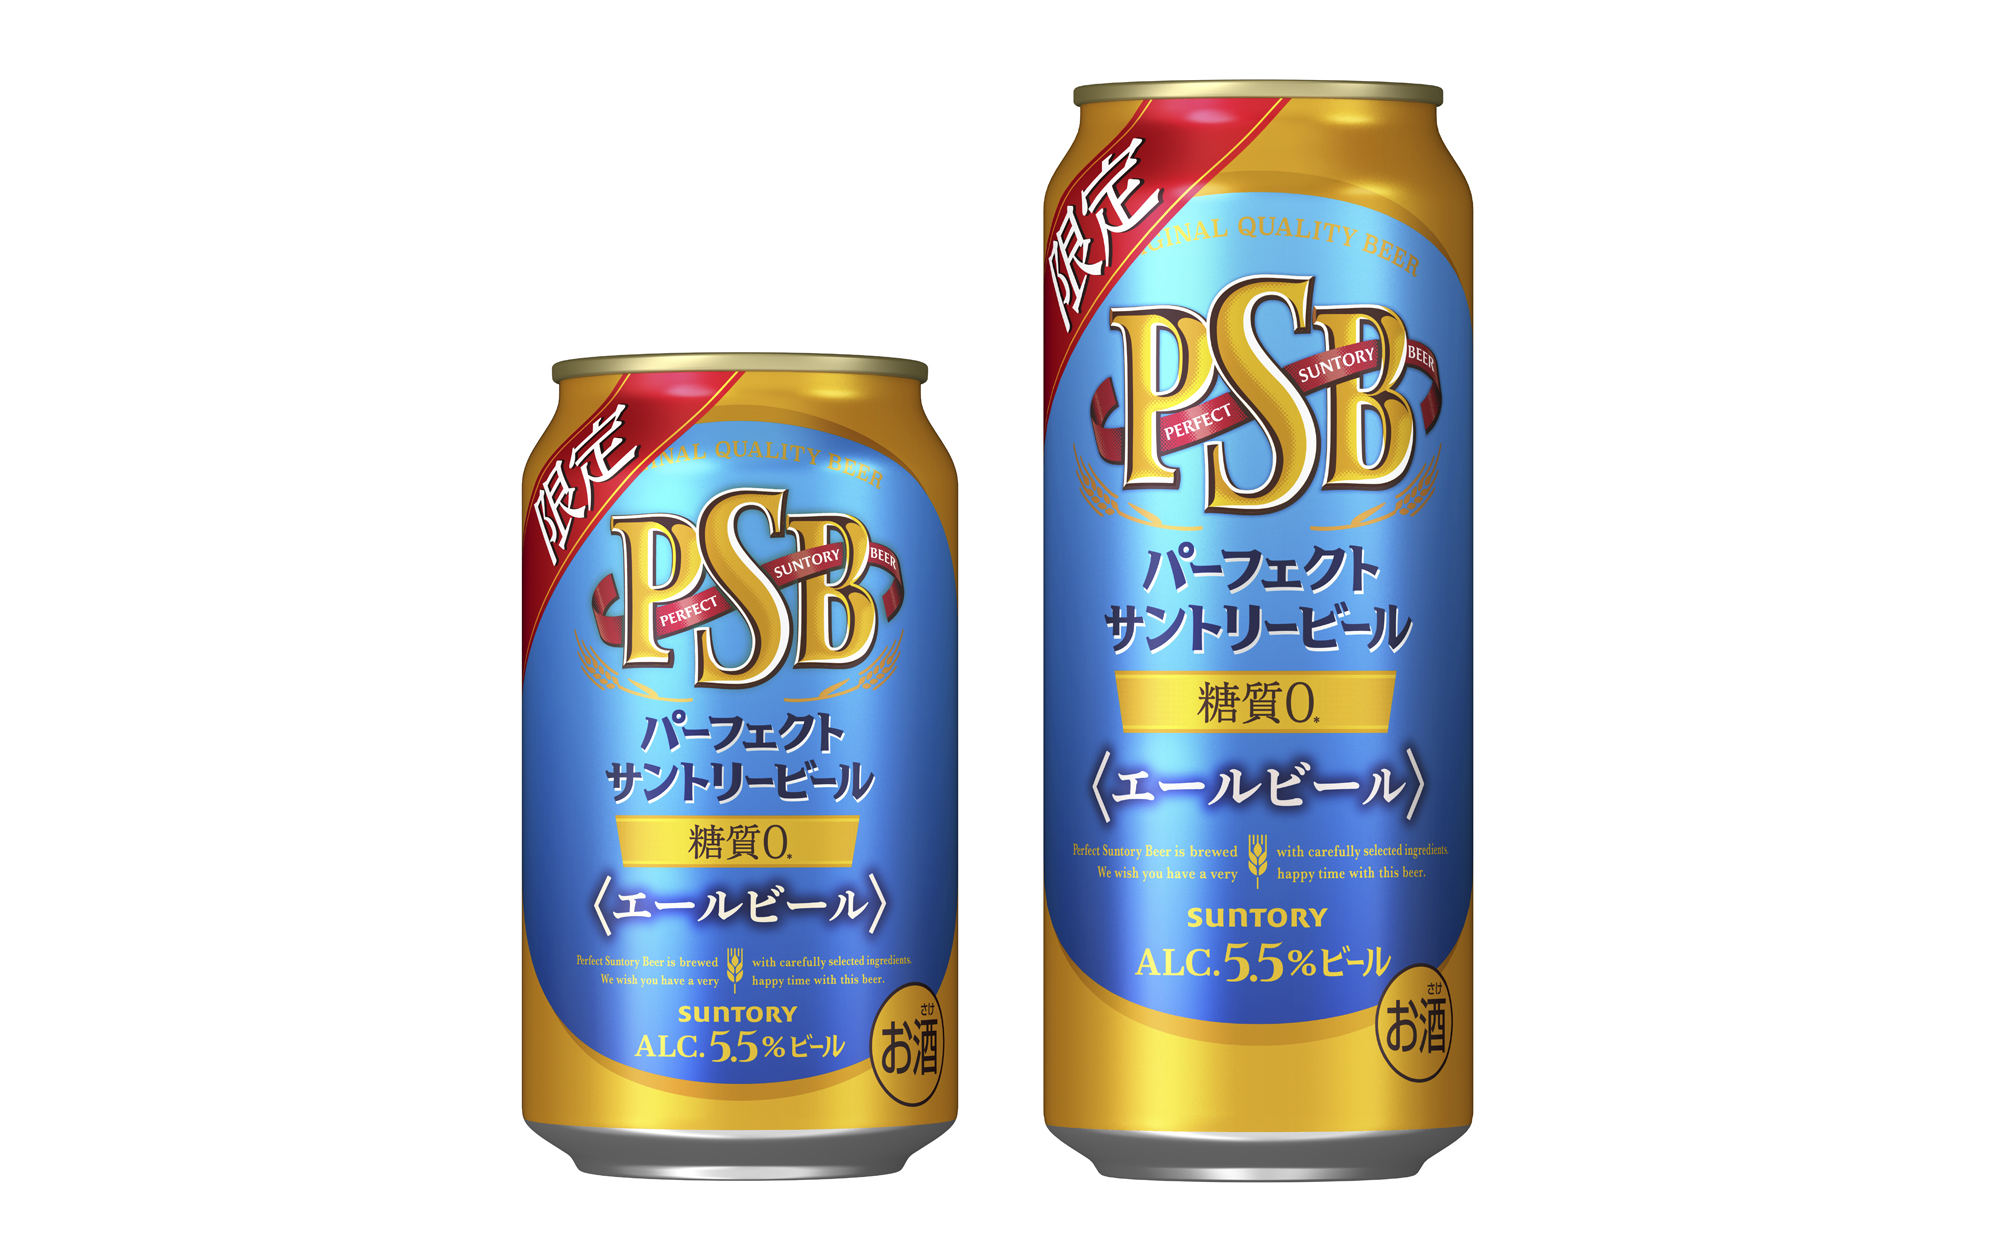 糖質ゼロ(※)のエールビール「パーフェクトサントリービール〈エールビール〉」数量限定新発売